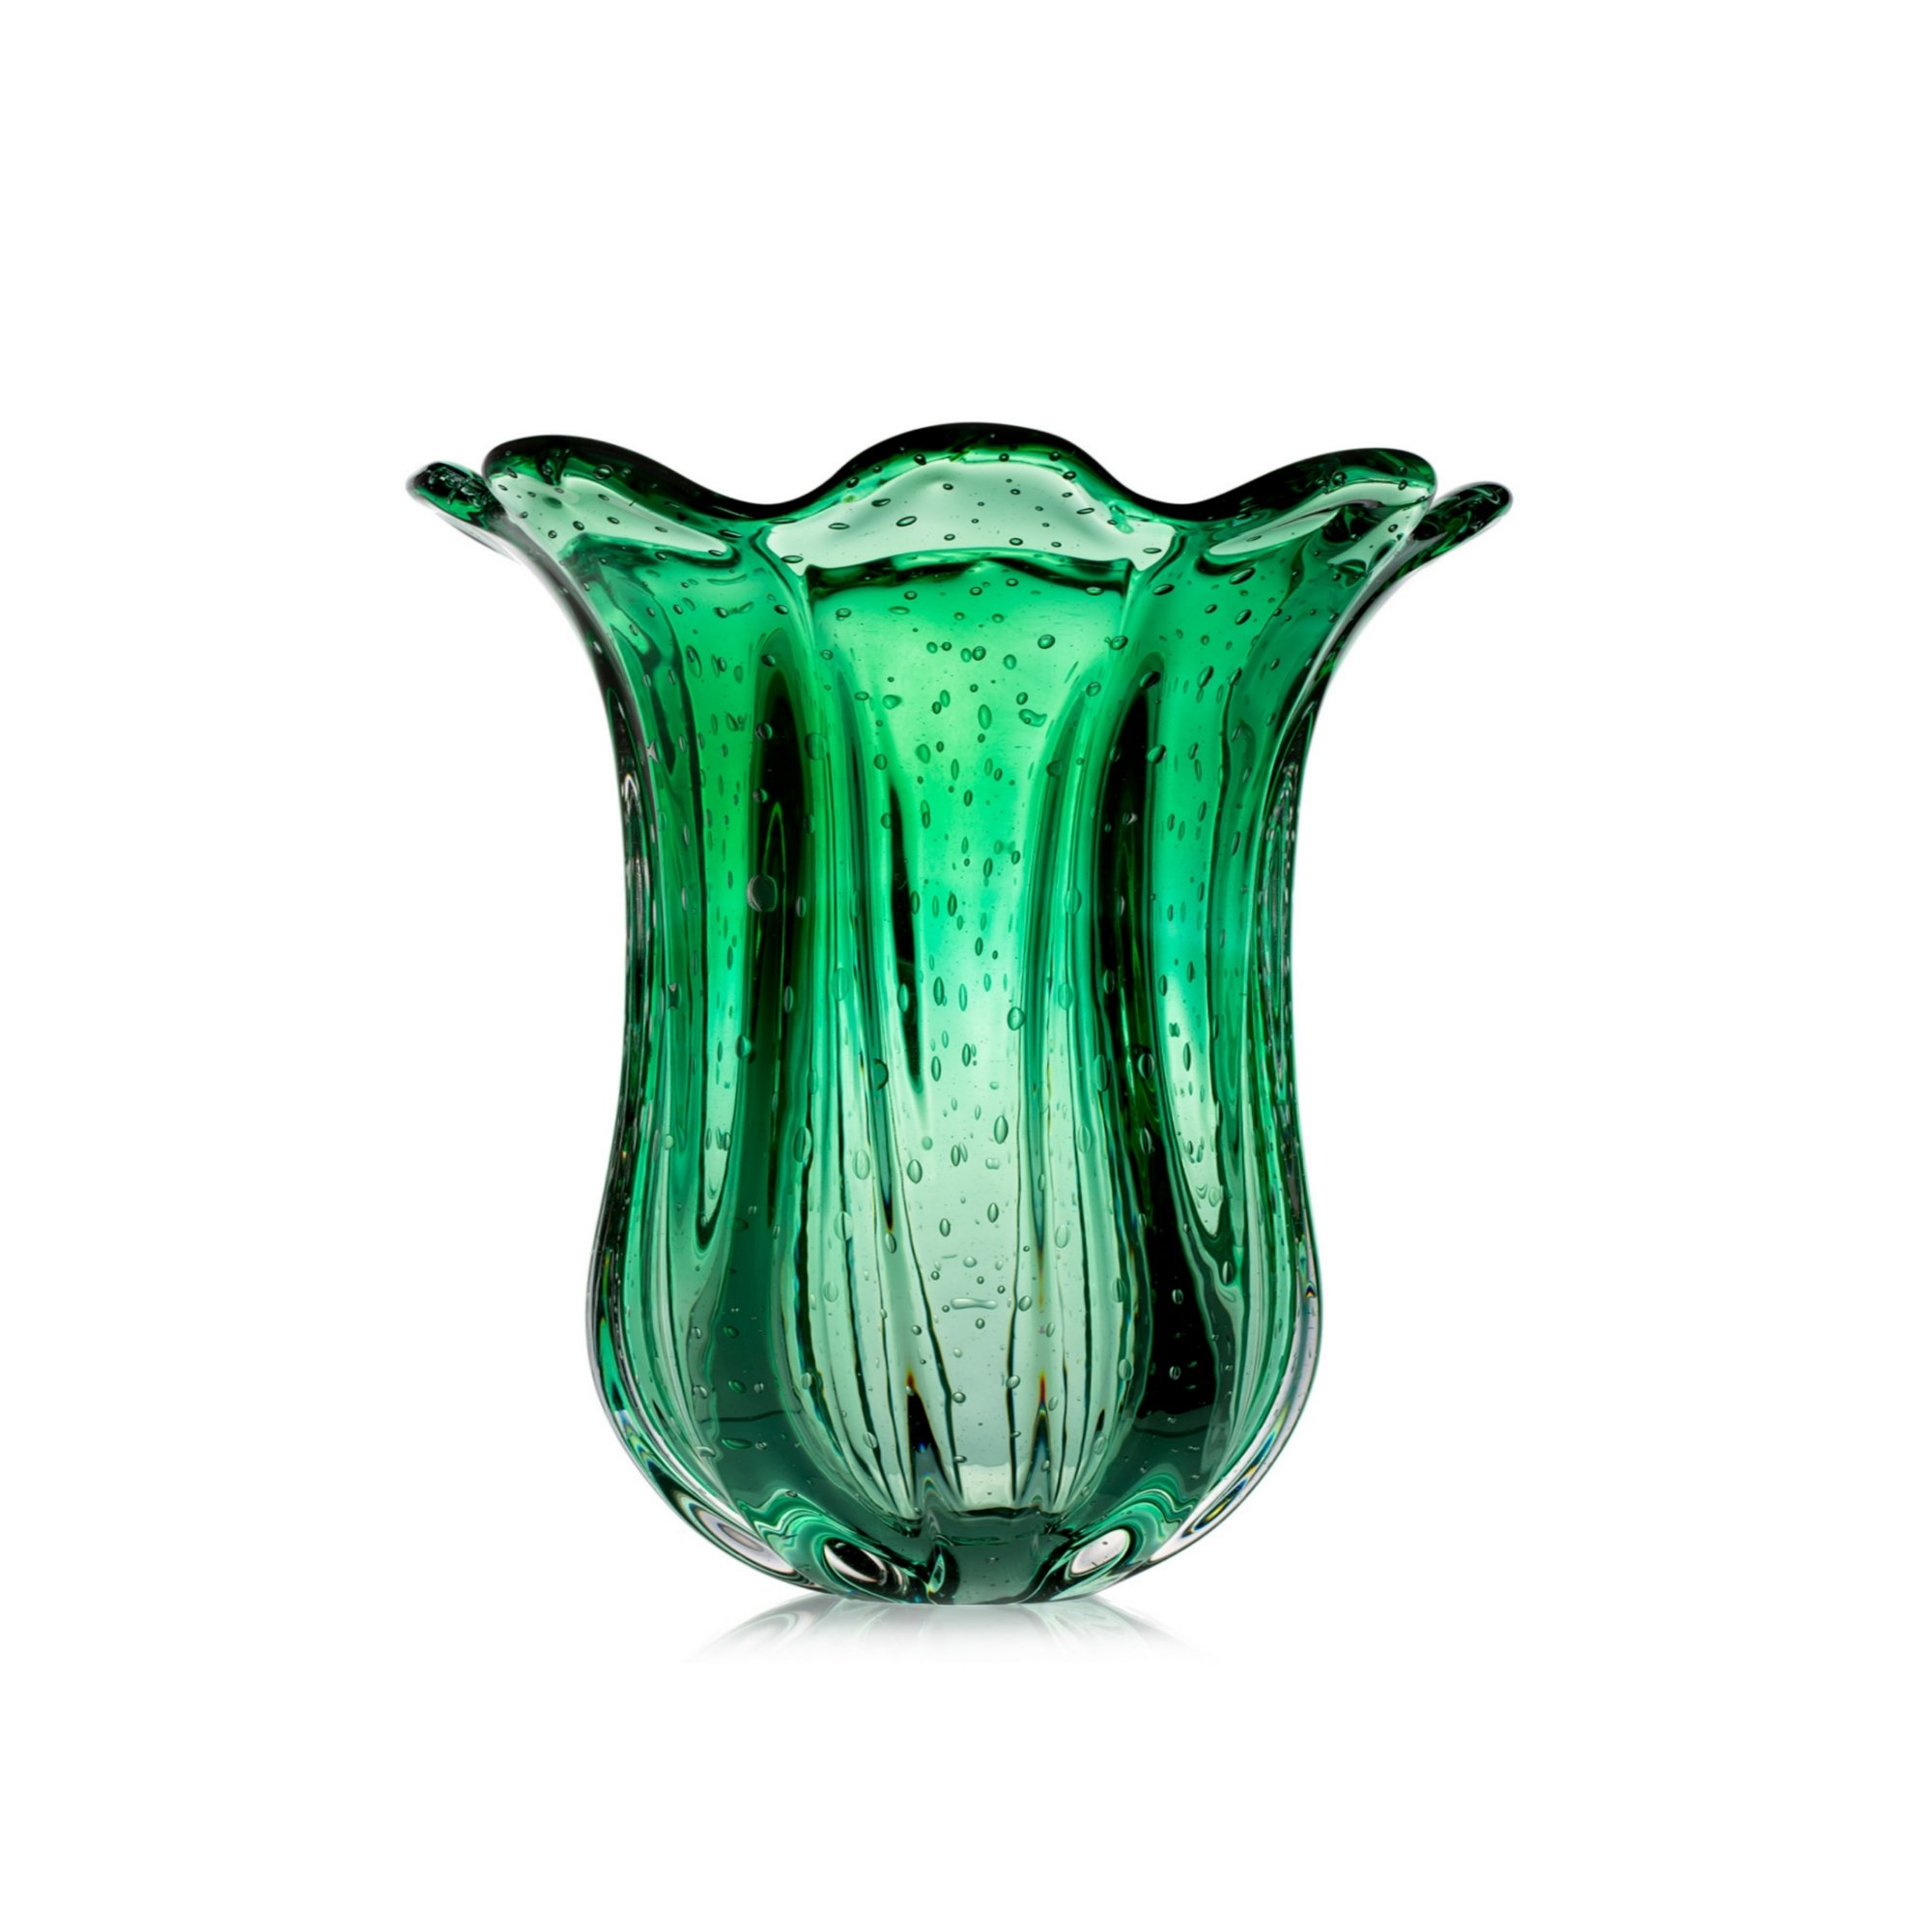 01 vaso murano everest p verde folha